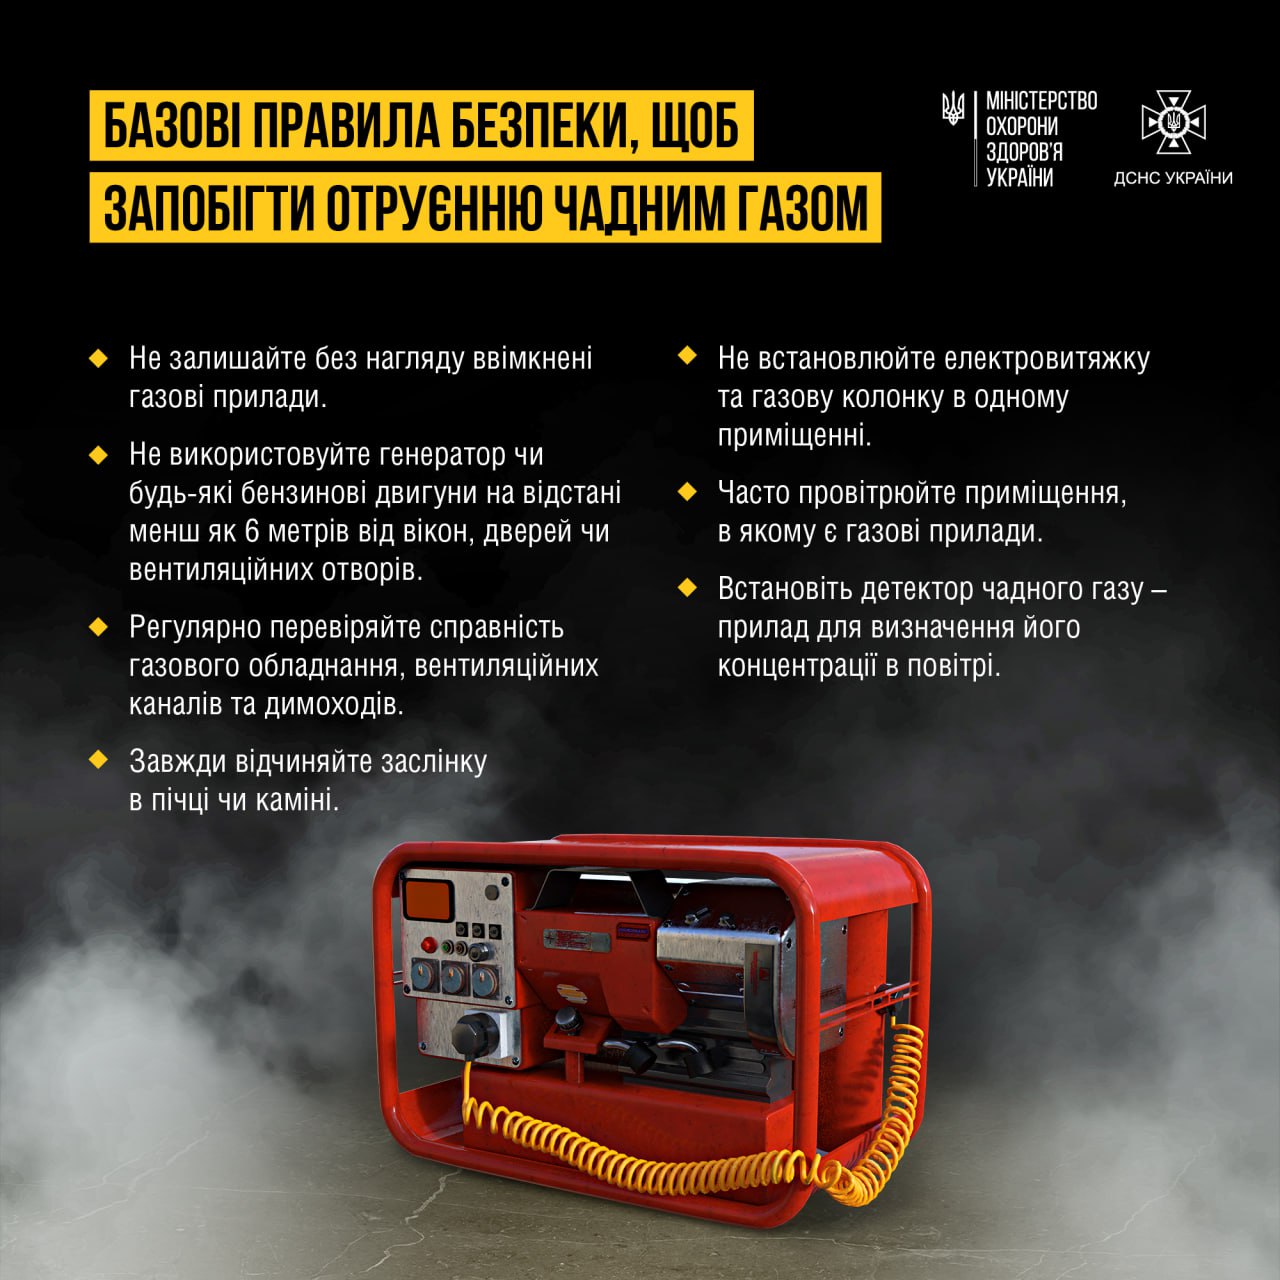 В Украине растет количество случаев отравления угарным газом ─ некоторые из них приводят к смерти